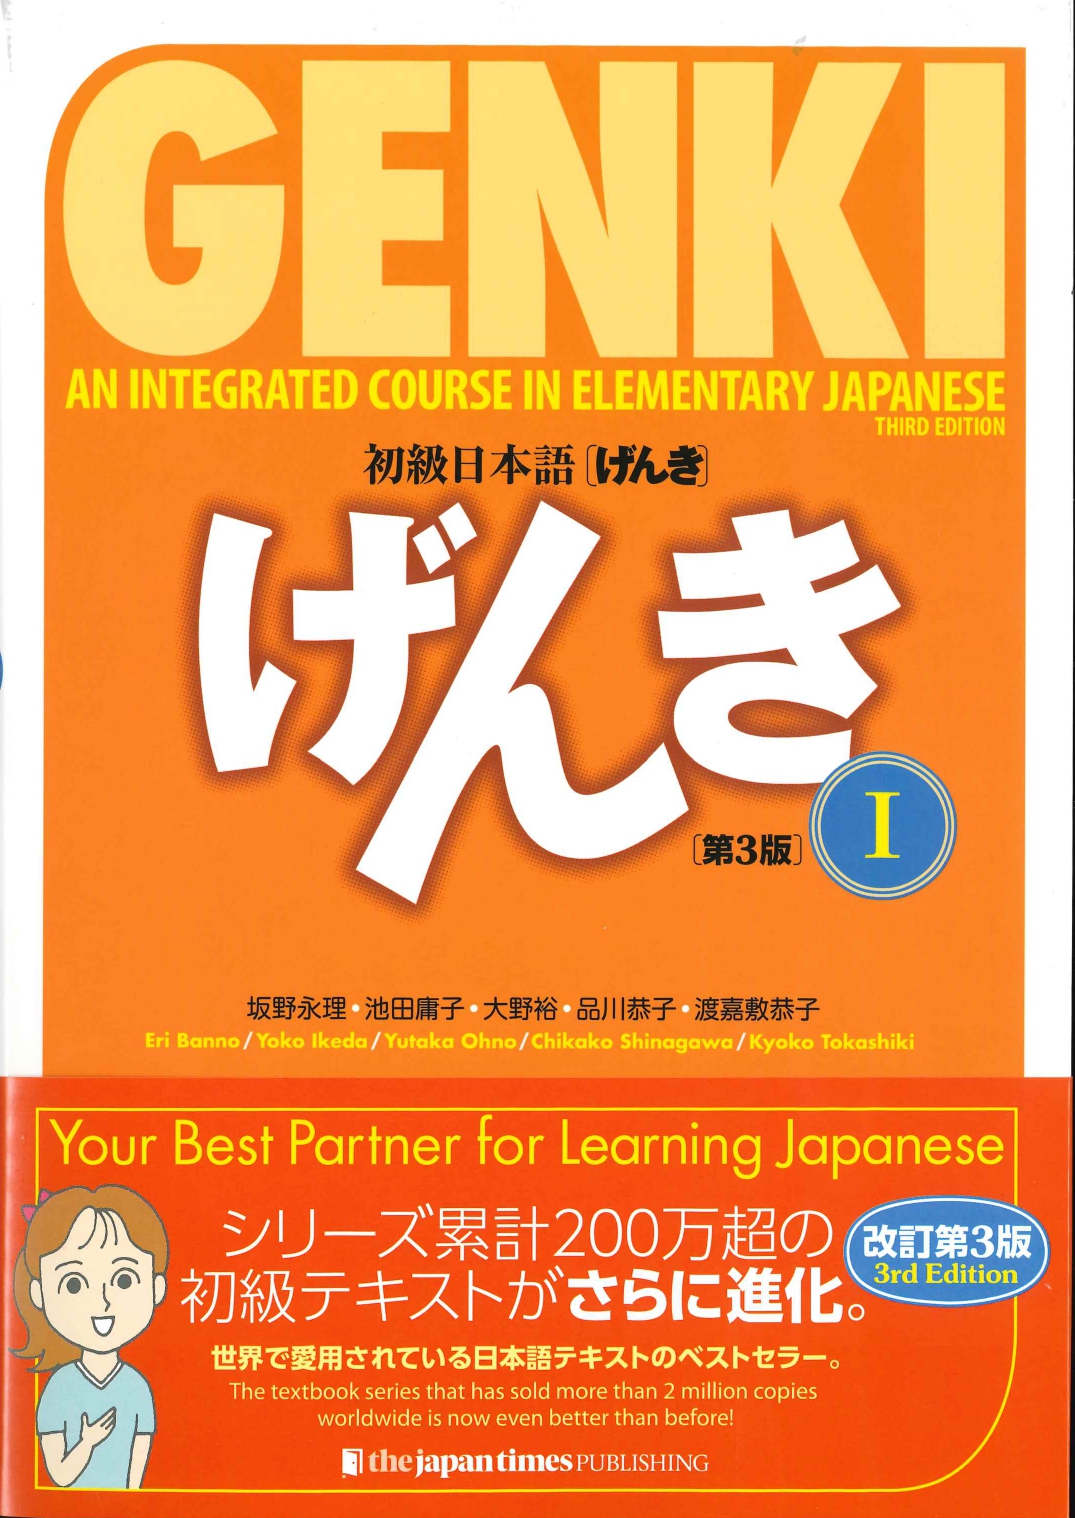 初級日本語げんき 第3版 世界の日本語教育に貢献するにほんごの凡人社